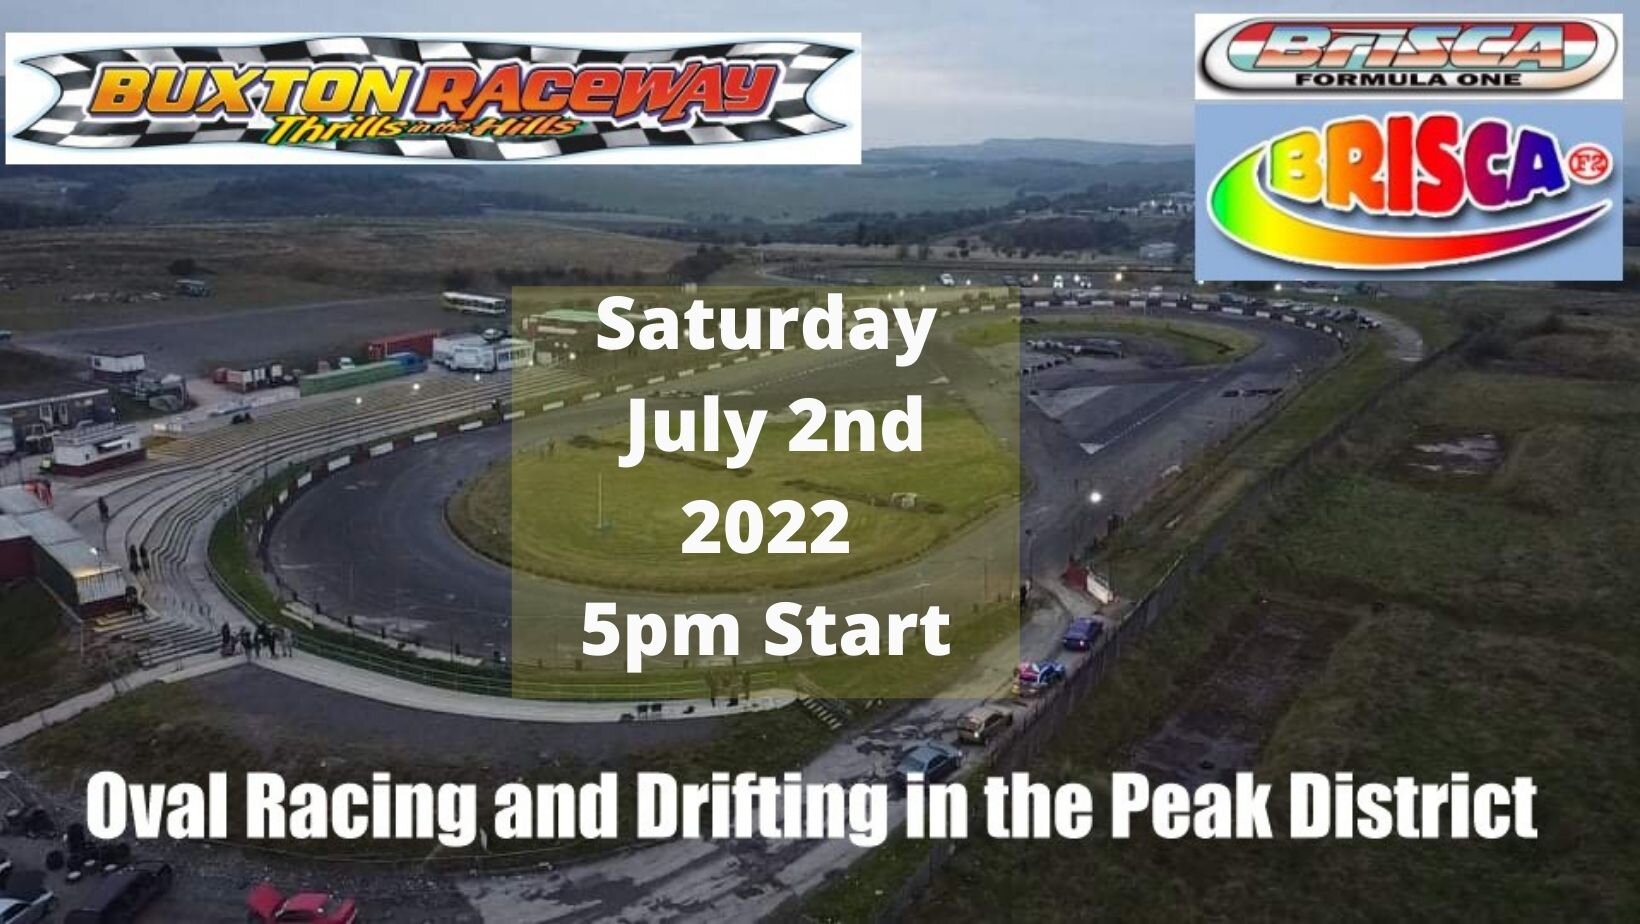 Buxton Raceway | Saturday 2nd July 5pm